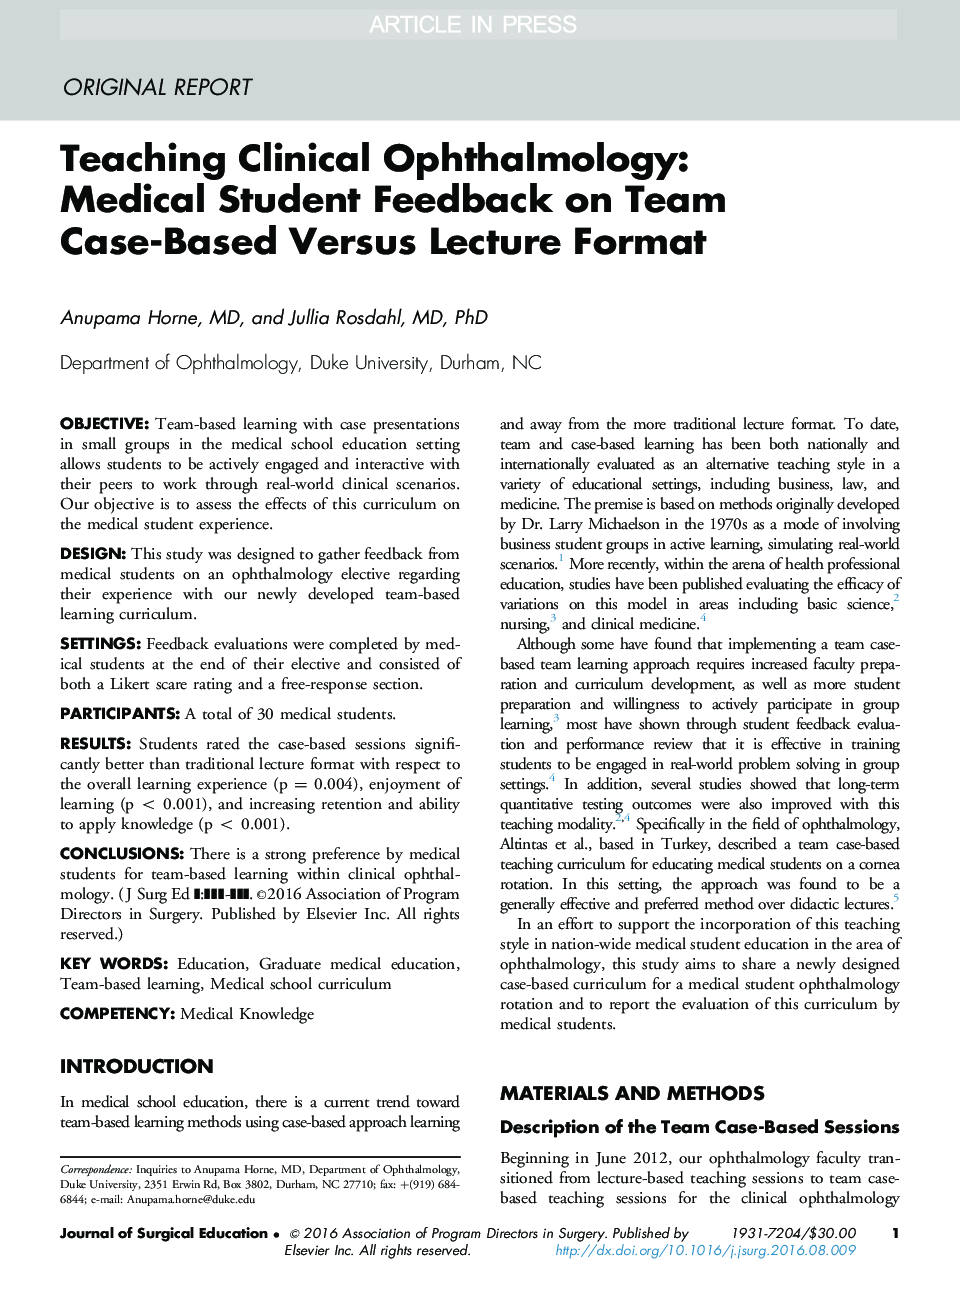 آموزش چشم پزشکی بالینی: بازخورد دانشجویان پزشکی در مورد فرم پرسشی مبتنی بر نمونه تیمی 